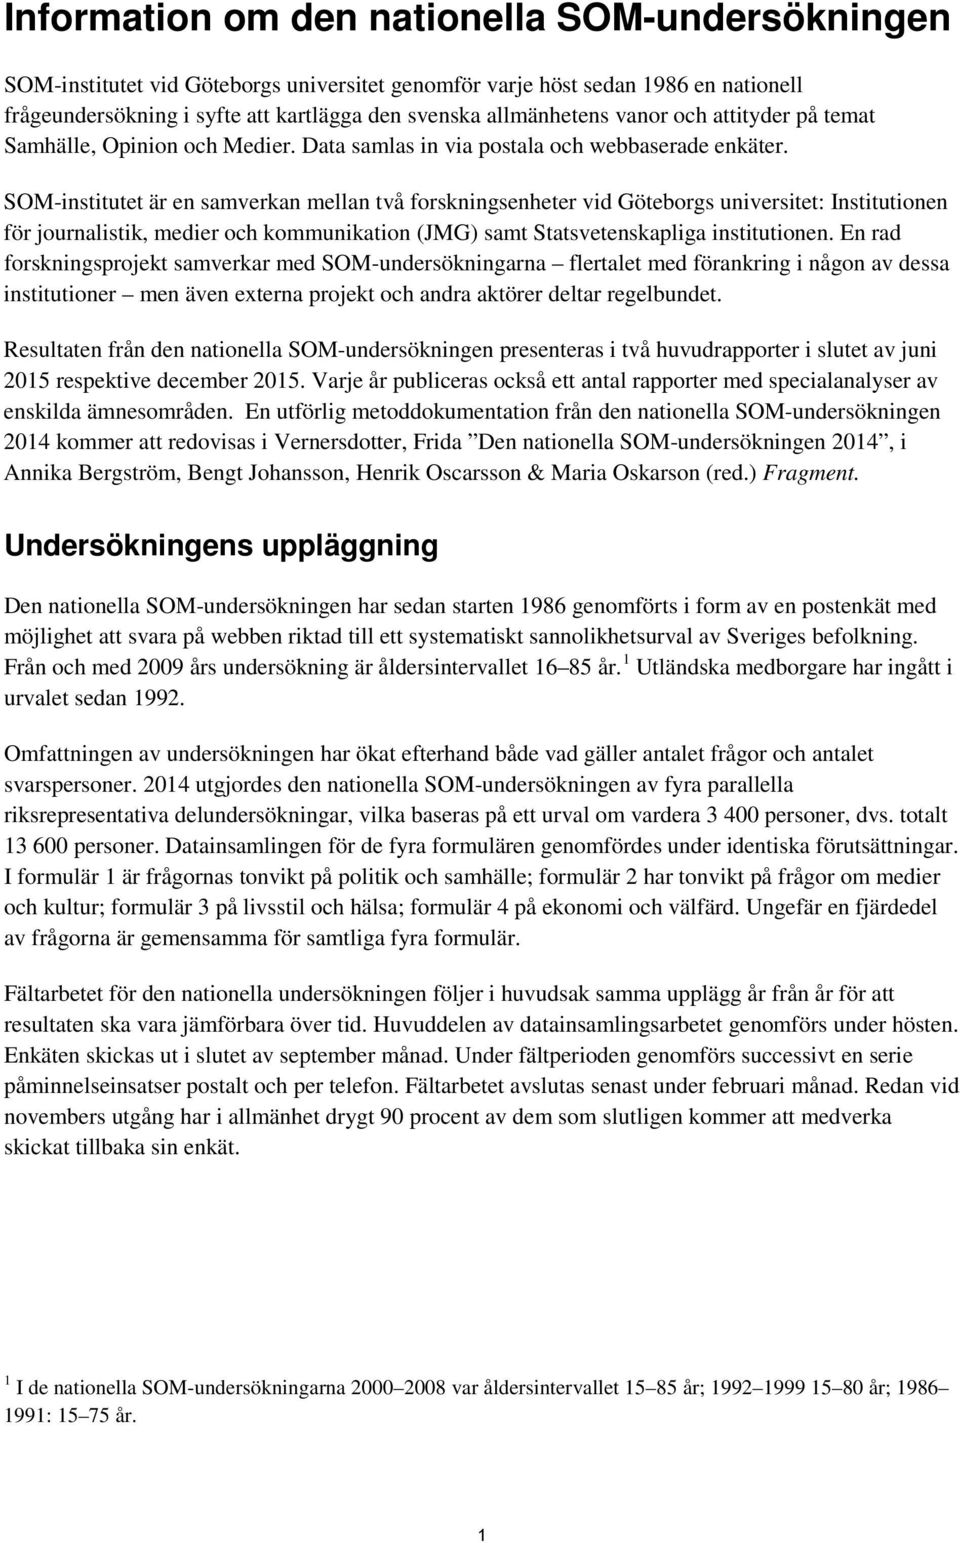 SOM-institutet är en samverkan mellan två forskningsenheter vid Göteborgs universitet: Institutionen för journalistik, medier och kommunikation (JMG) samt Statsvetenskapliga institutionen.